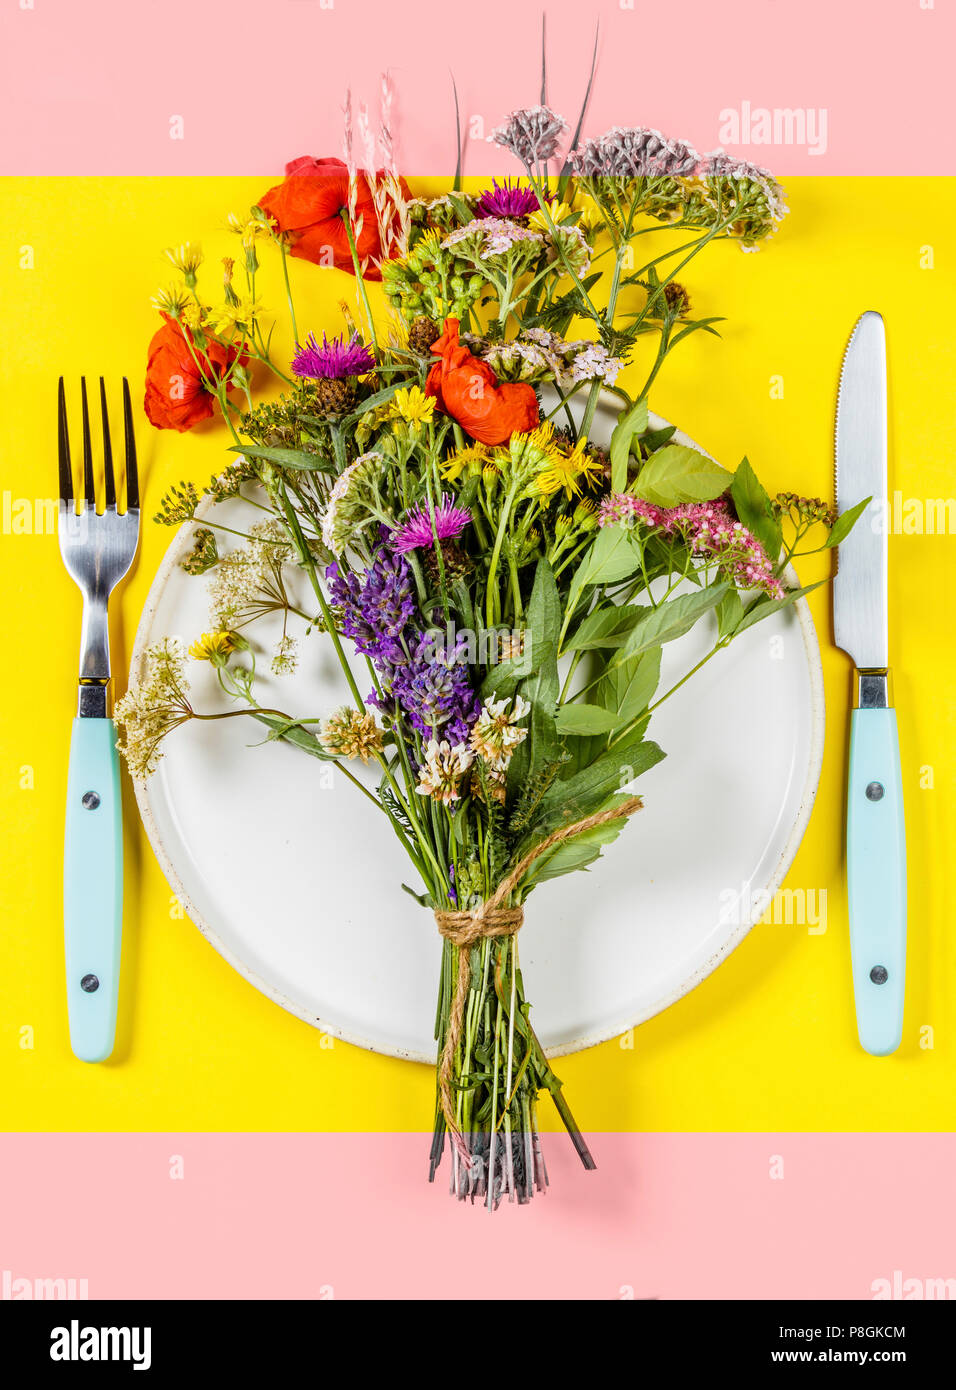 Piatto di laici wild bouquet di fiori sulla piastra bianca. Pulire mangiare, paleo, biohacking, la medicina di erbe concept Foto Stock